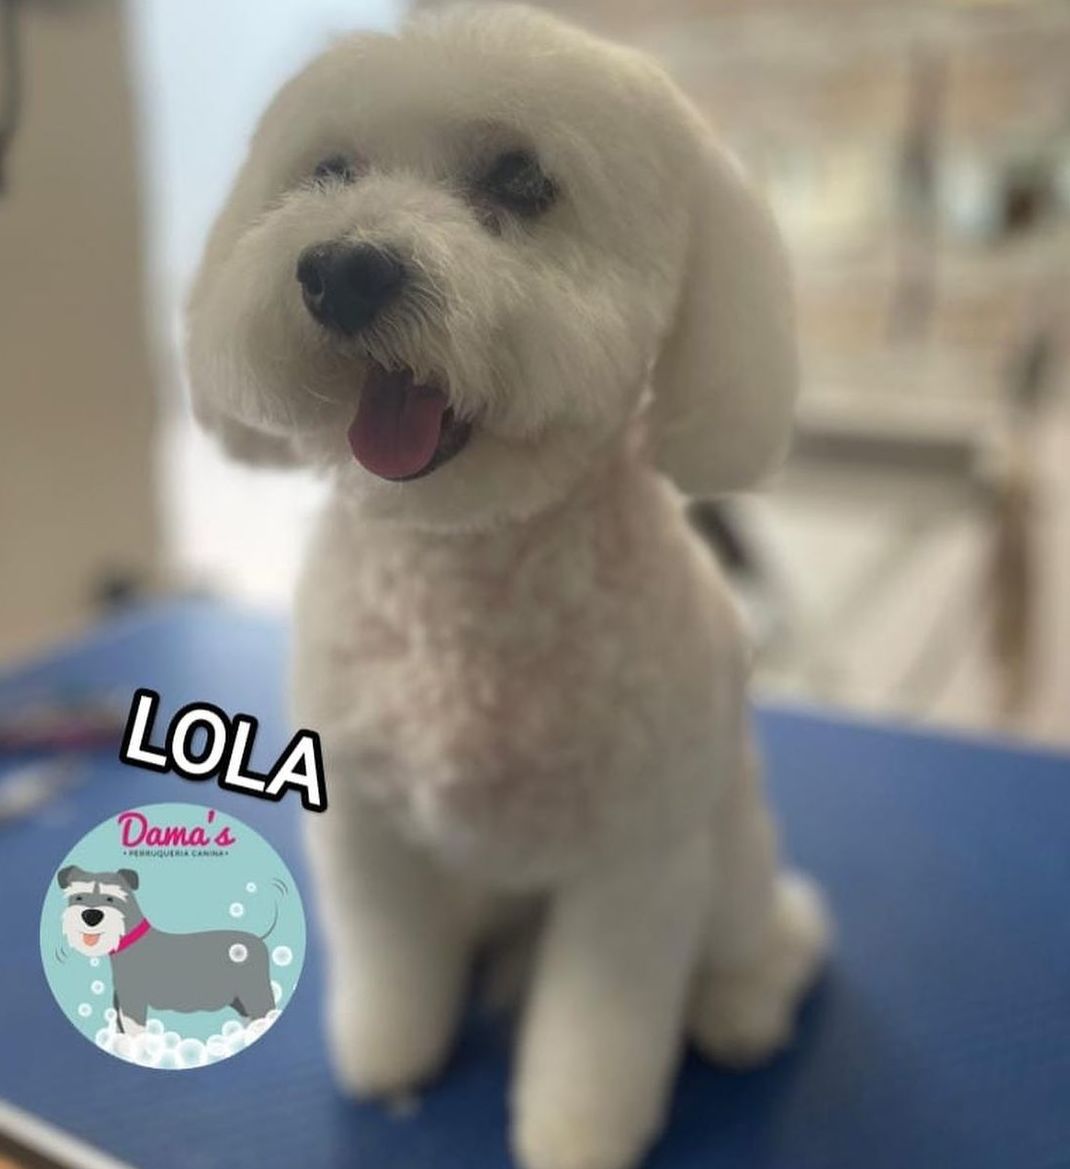 Foto 73 de Peluquería canina con todo tipo de tratamientos para tu mascota en  | Dama's